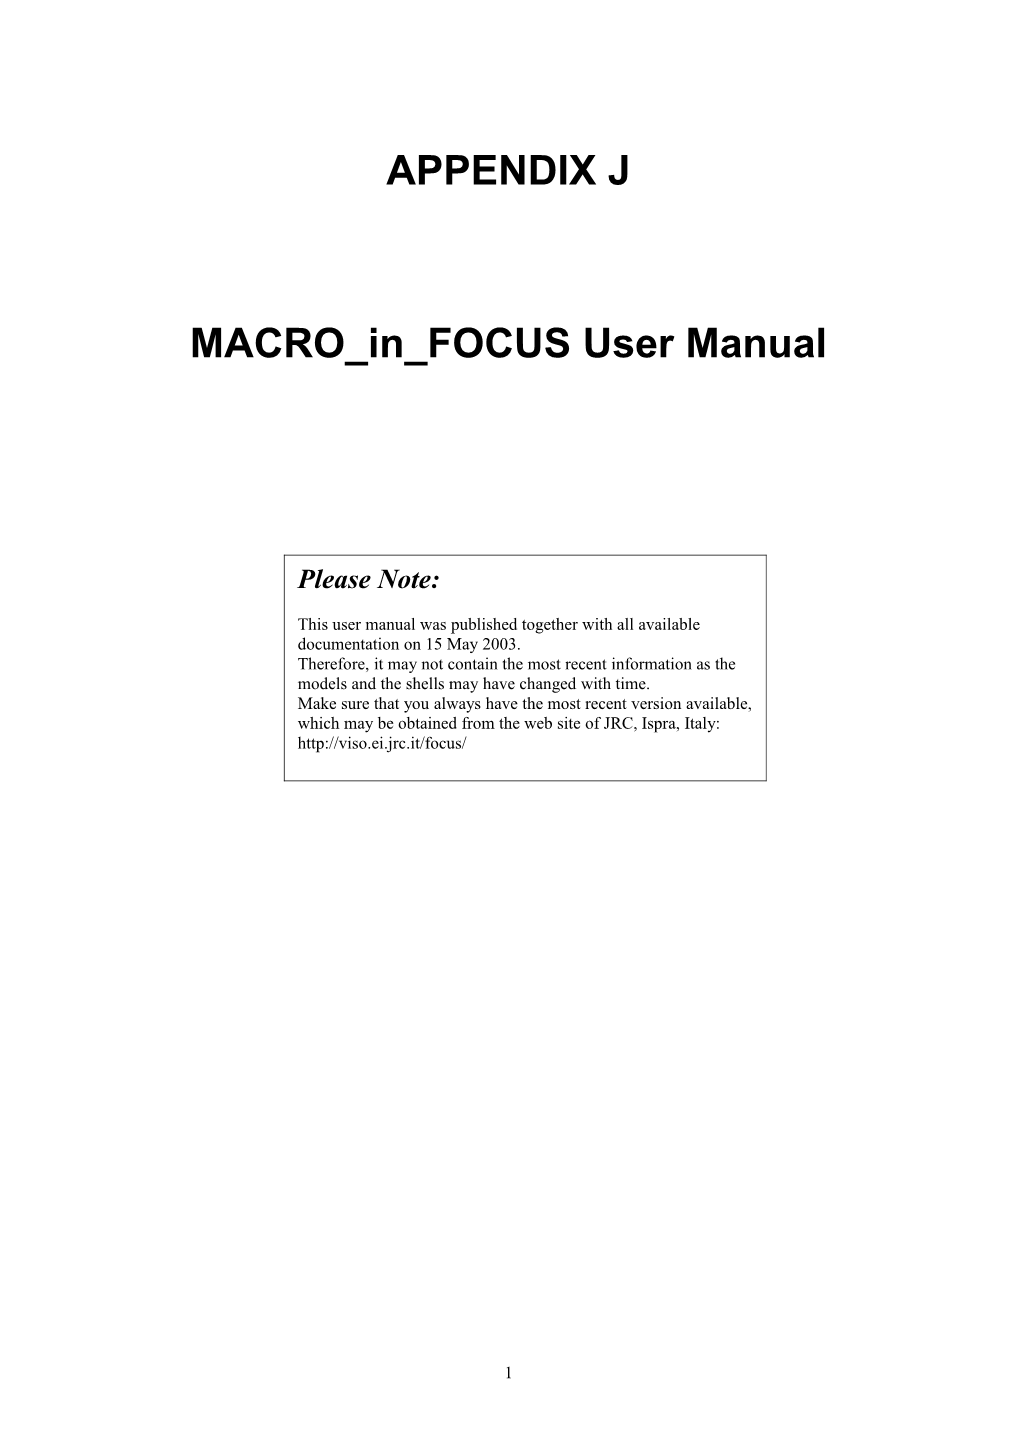 MACRO in FOCUS : User Guide s1